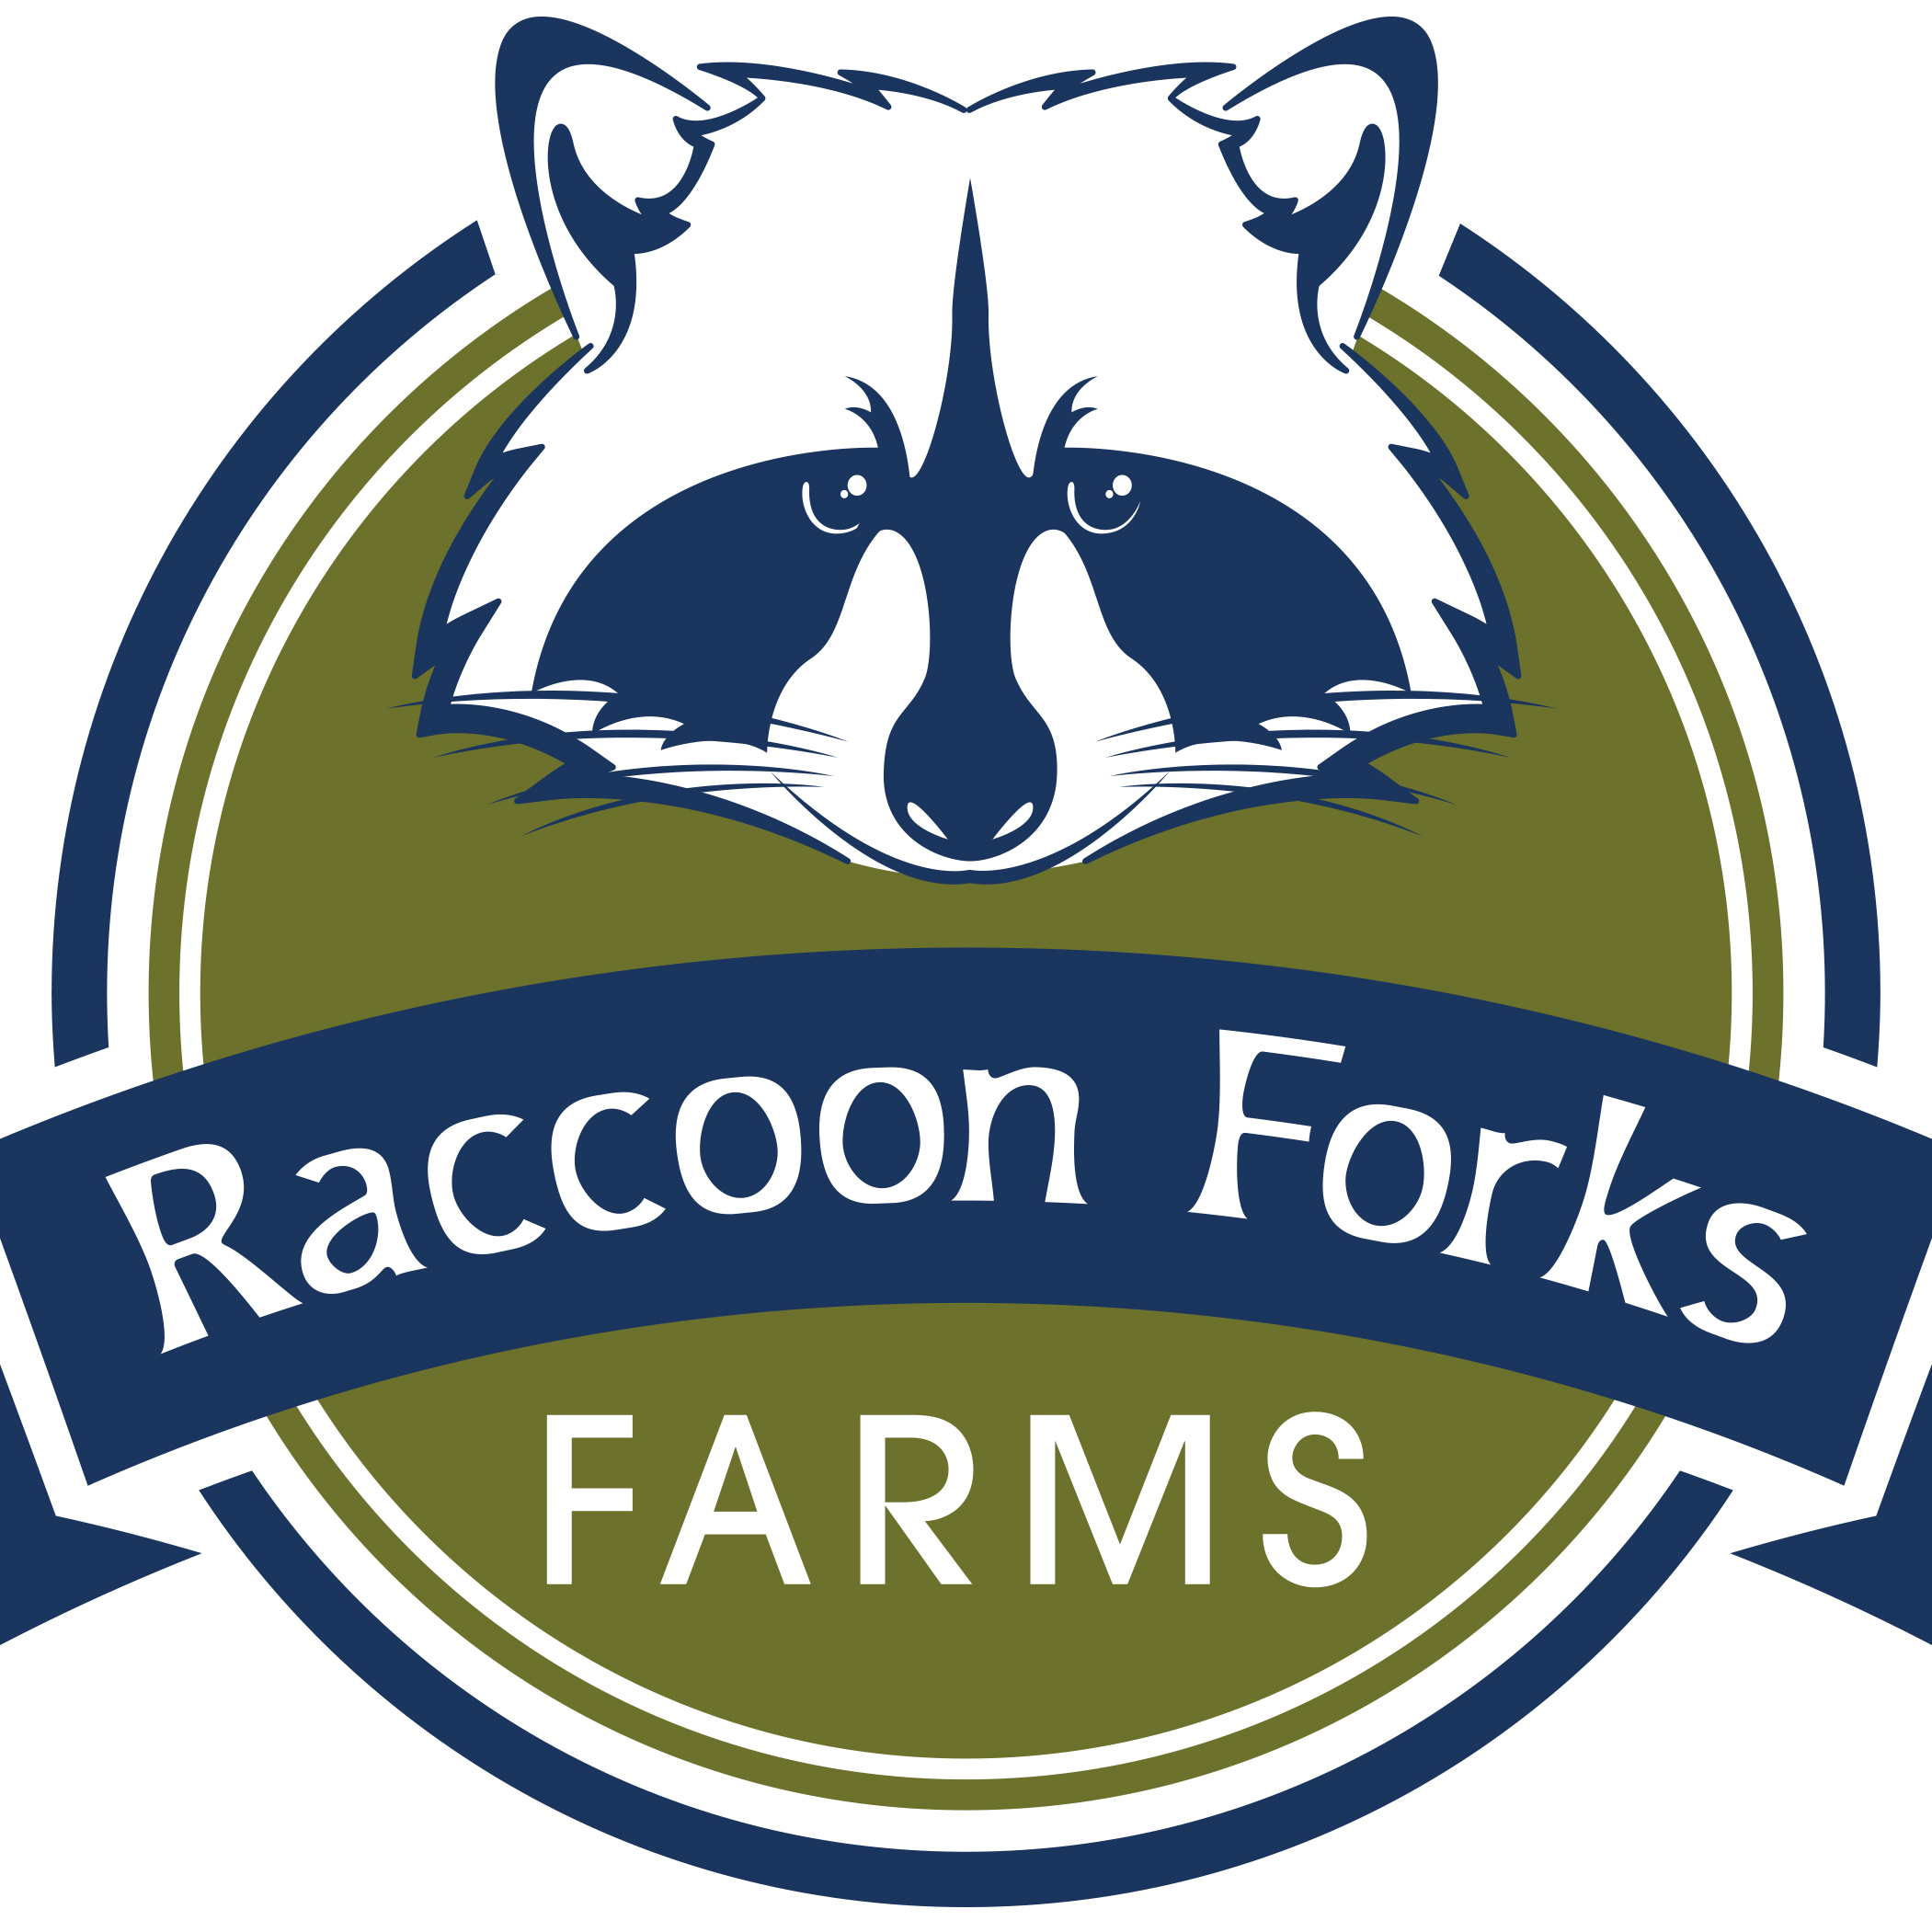 Raccoon Forks Farms